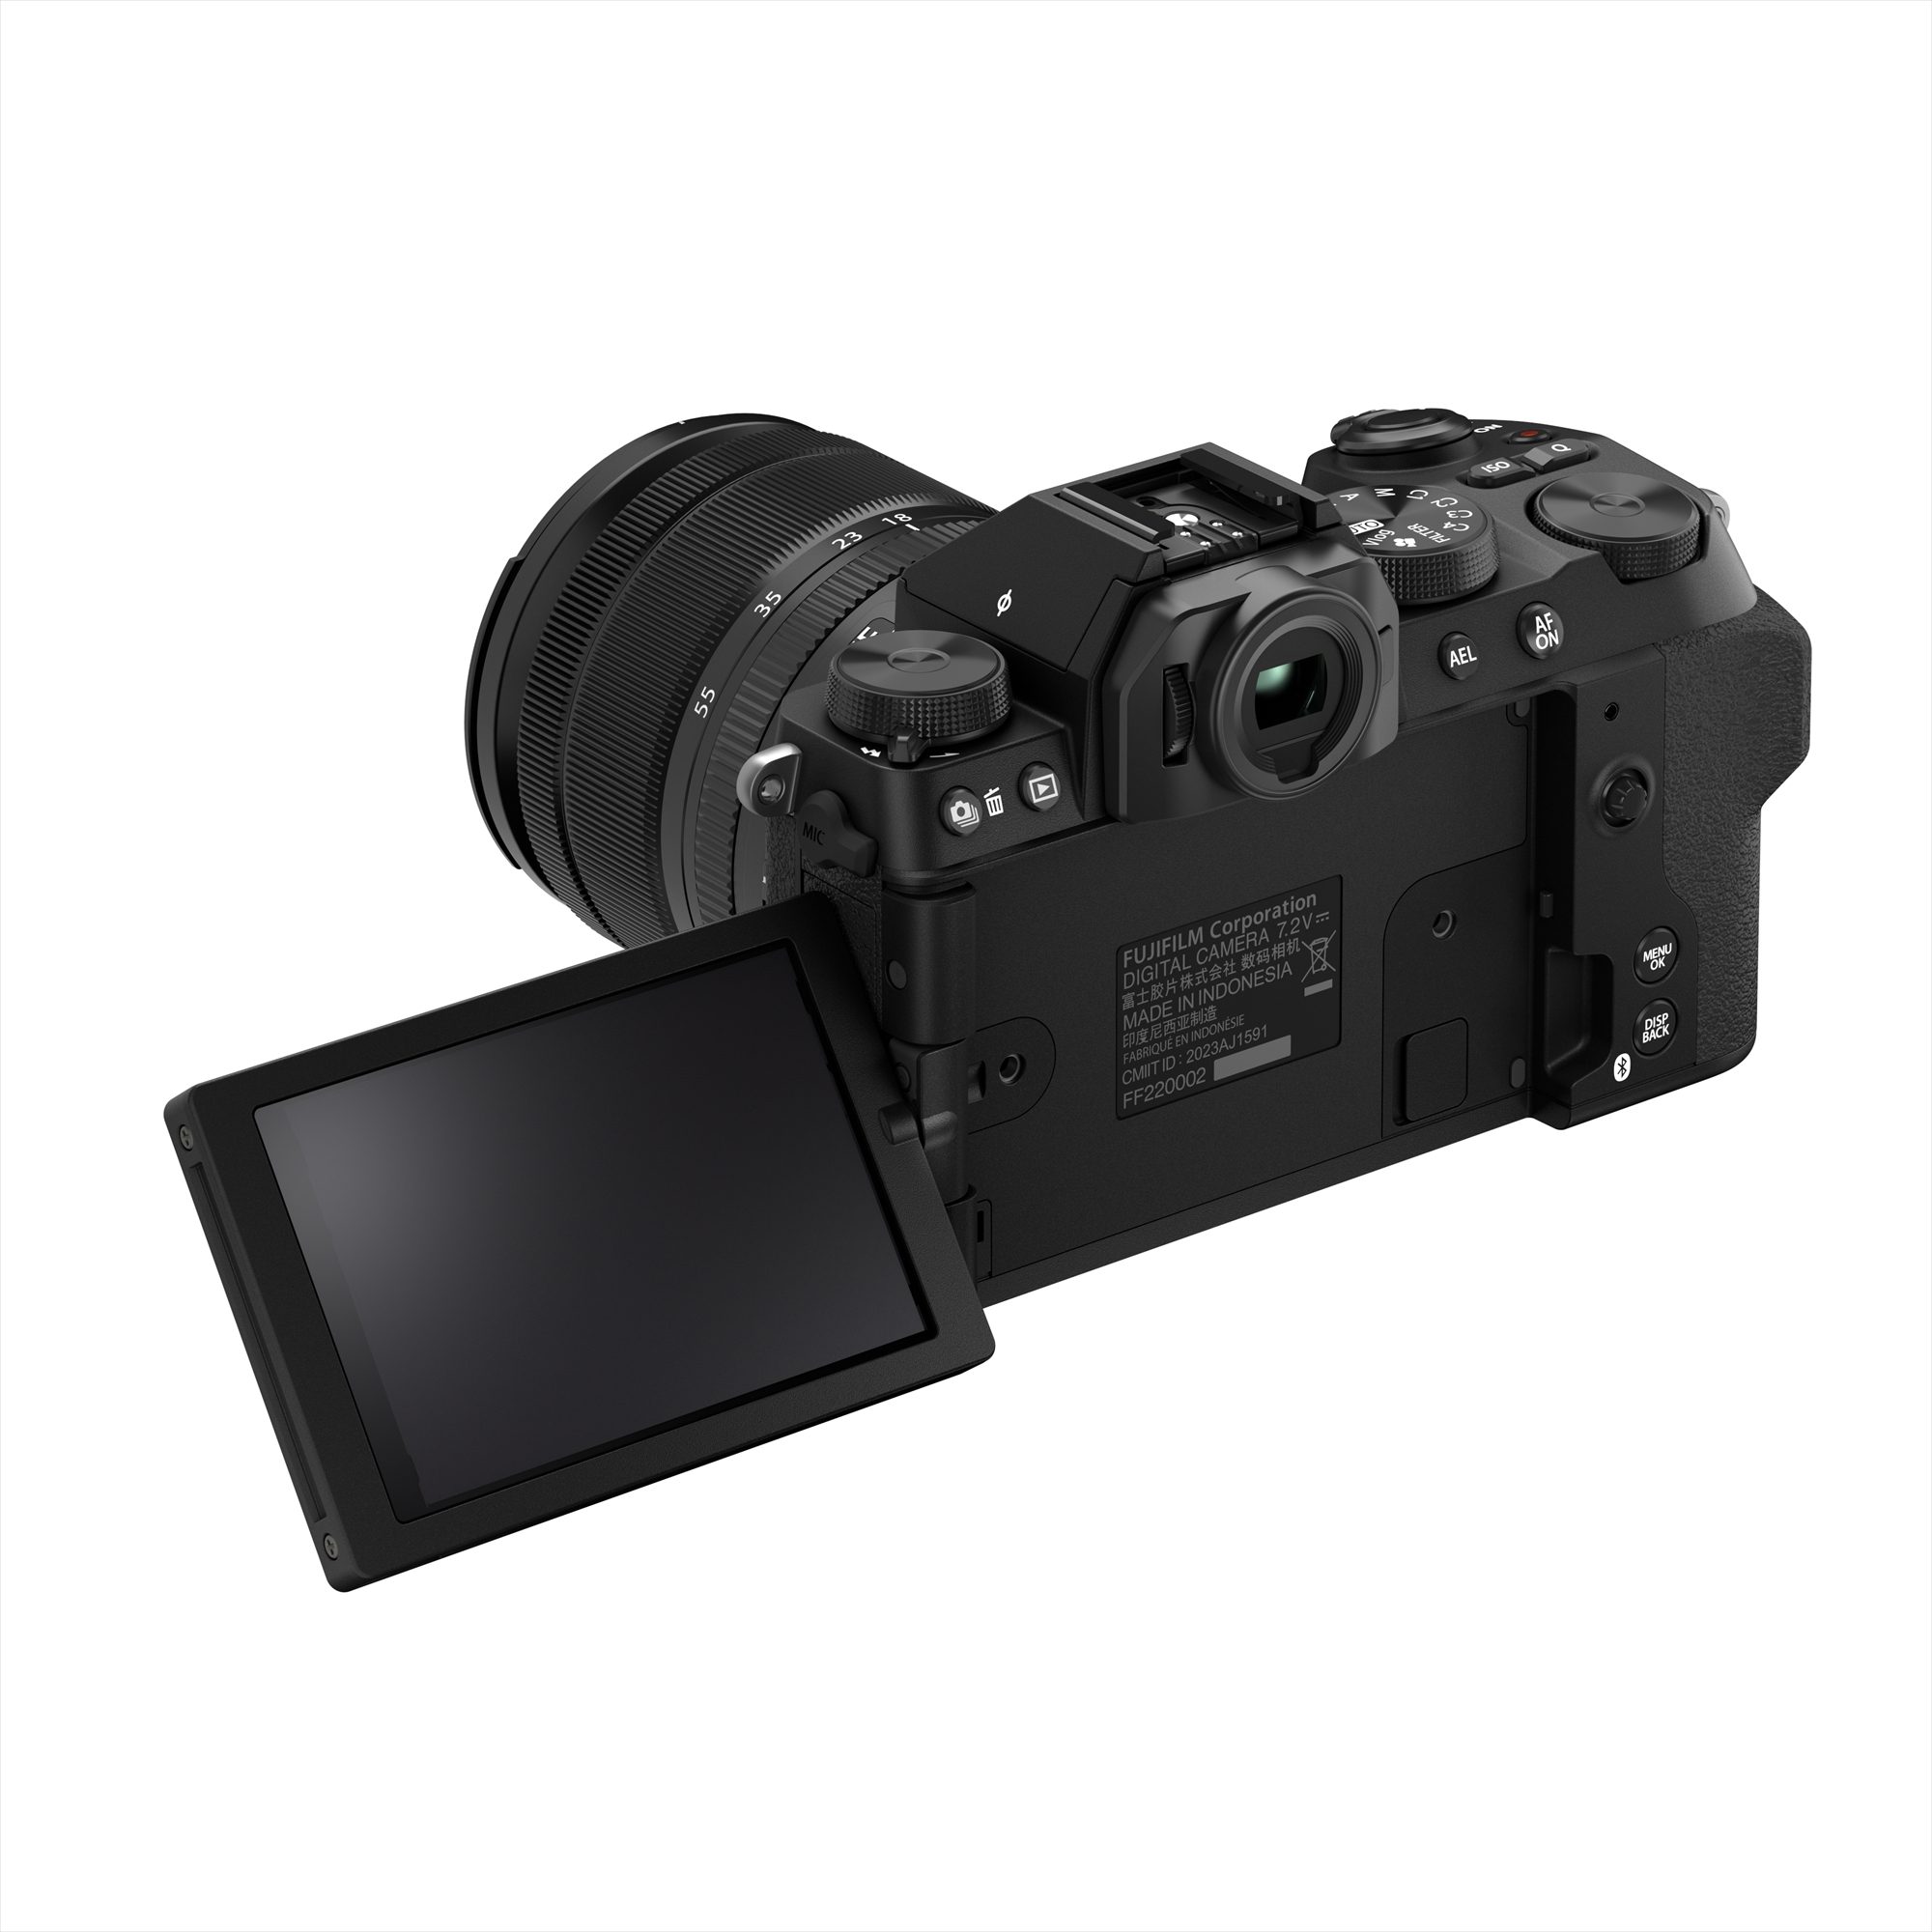 Fujifilm X-S20 with XC15-45mmF3.5-5.6 OIS PZ - Black